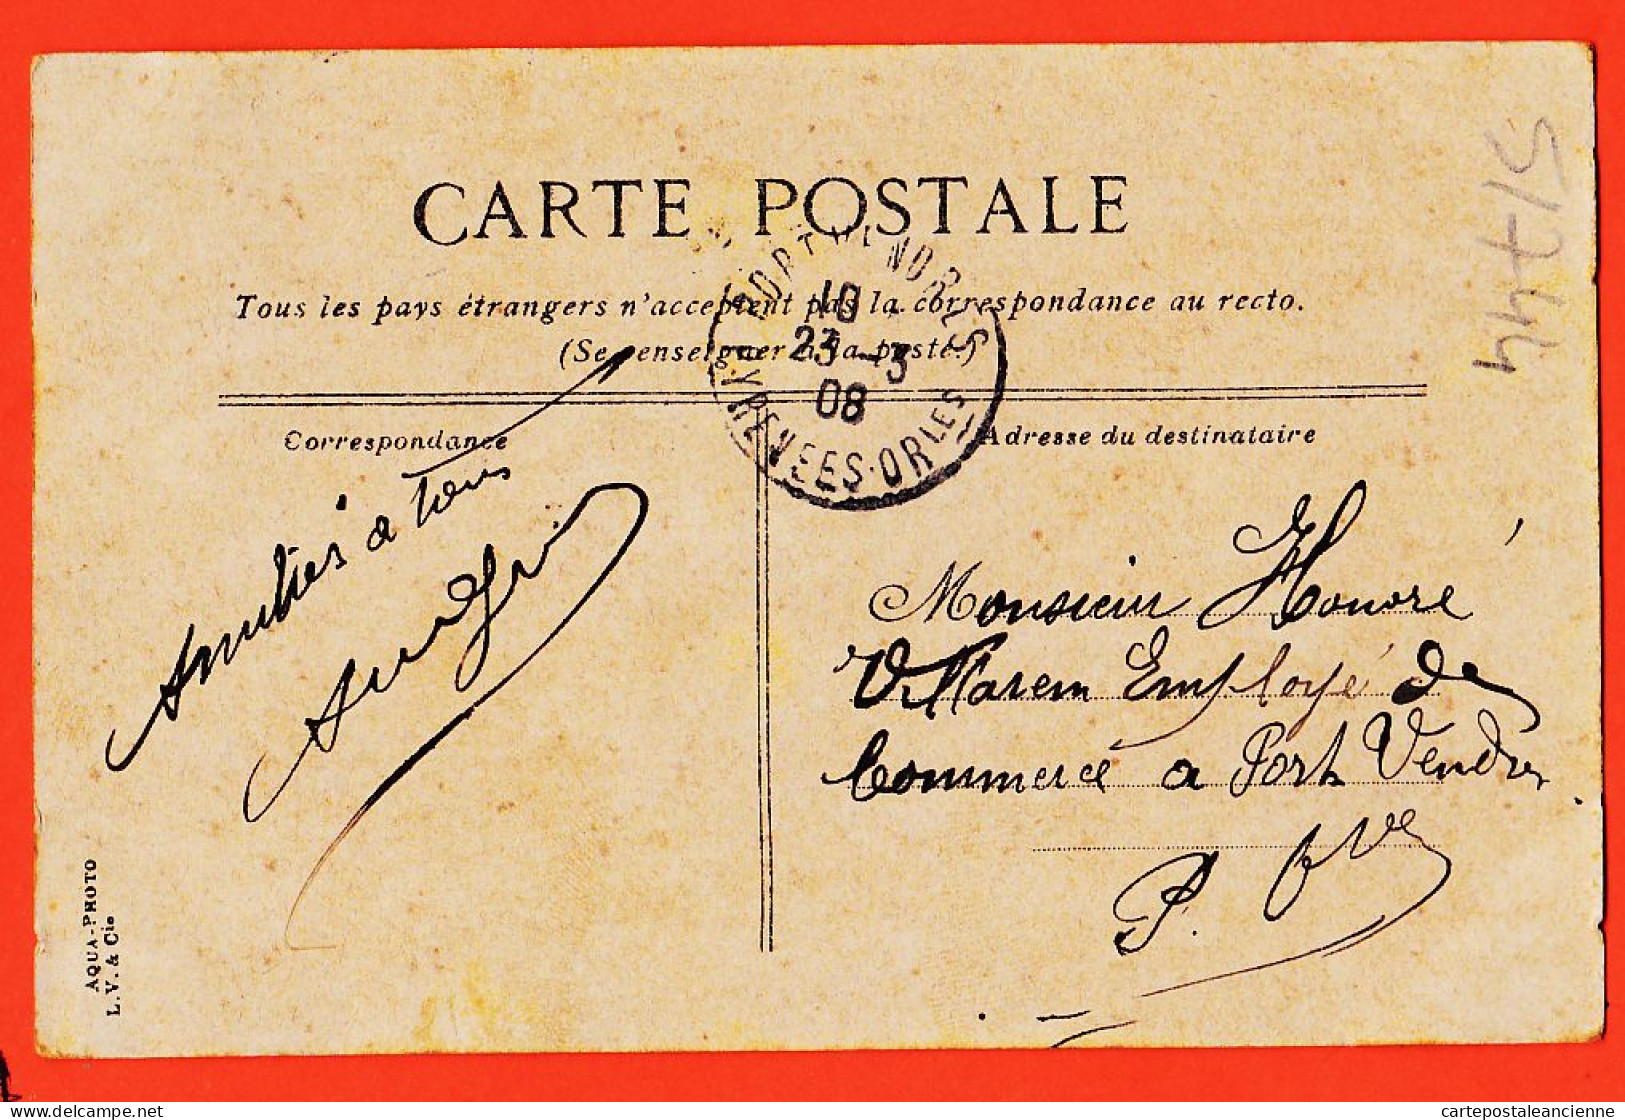 35017 / Aqua-Photo LEOPOLD VERGER 68 MARSEILLE (13) Coin Du Parc BORELY 1908 à Honoré VILAREM  Port-Vendres  - Canebière, Centre Ville